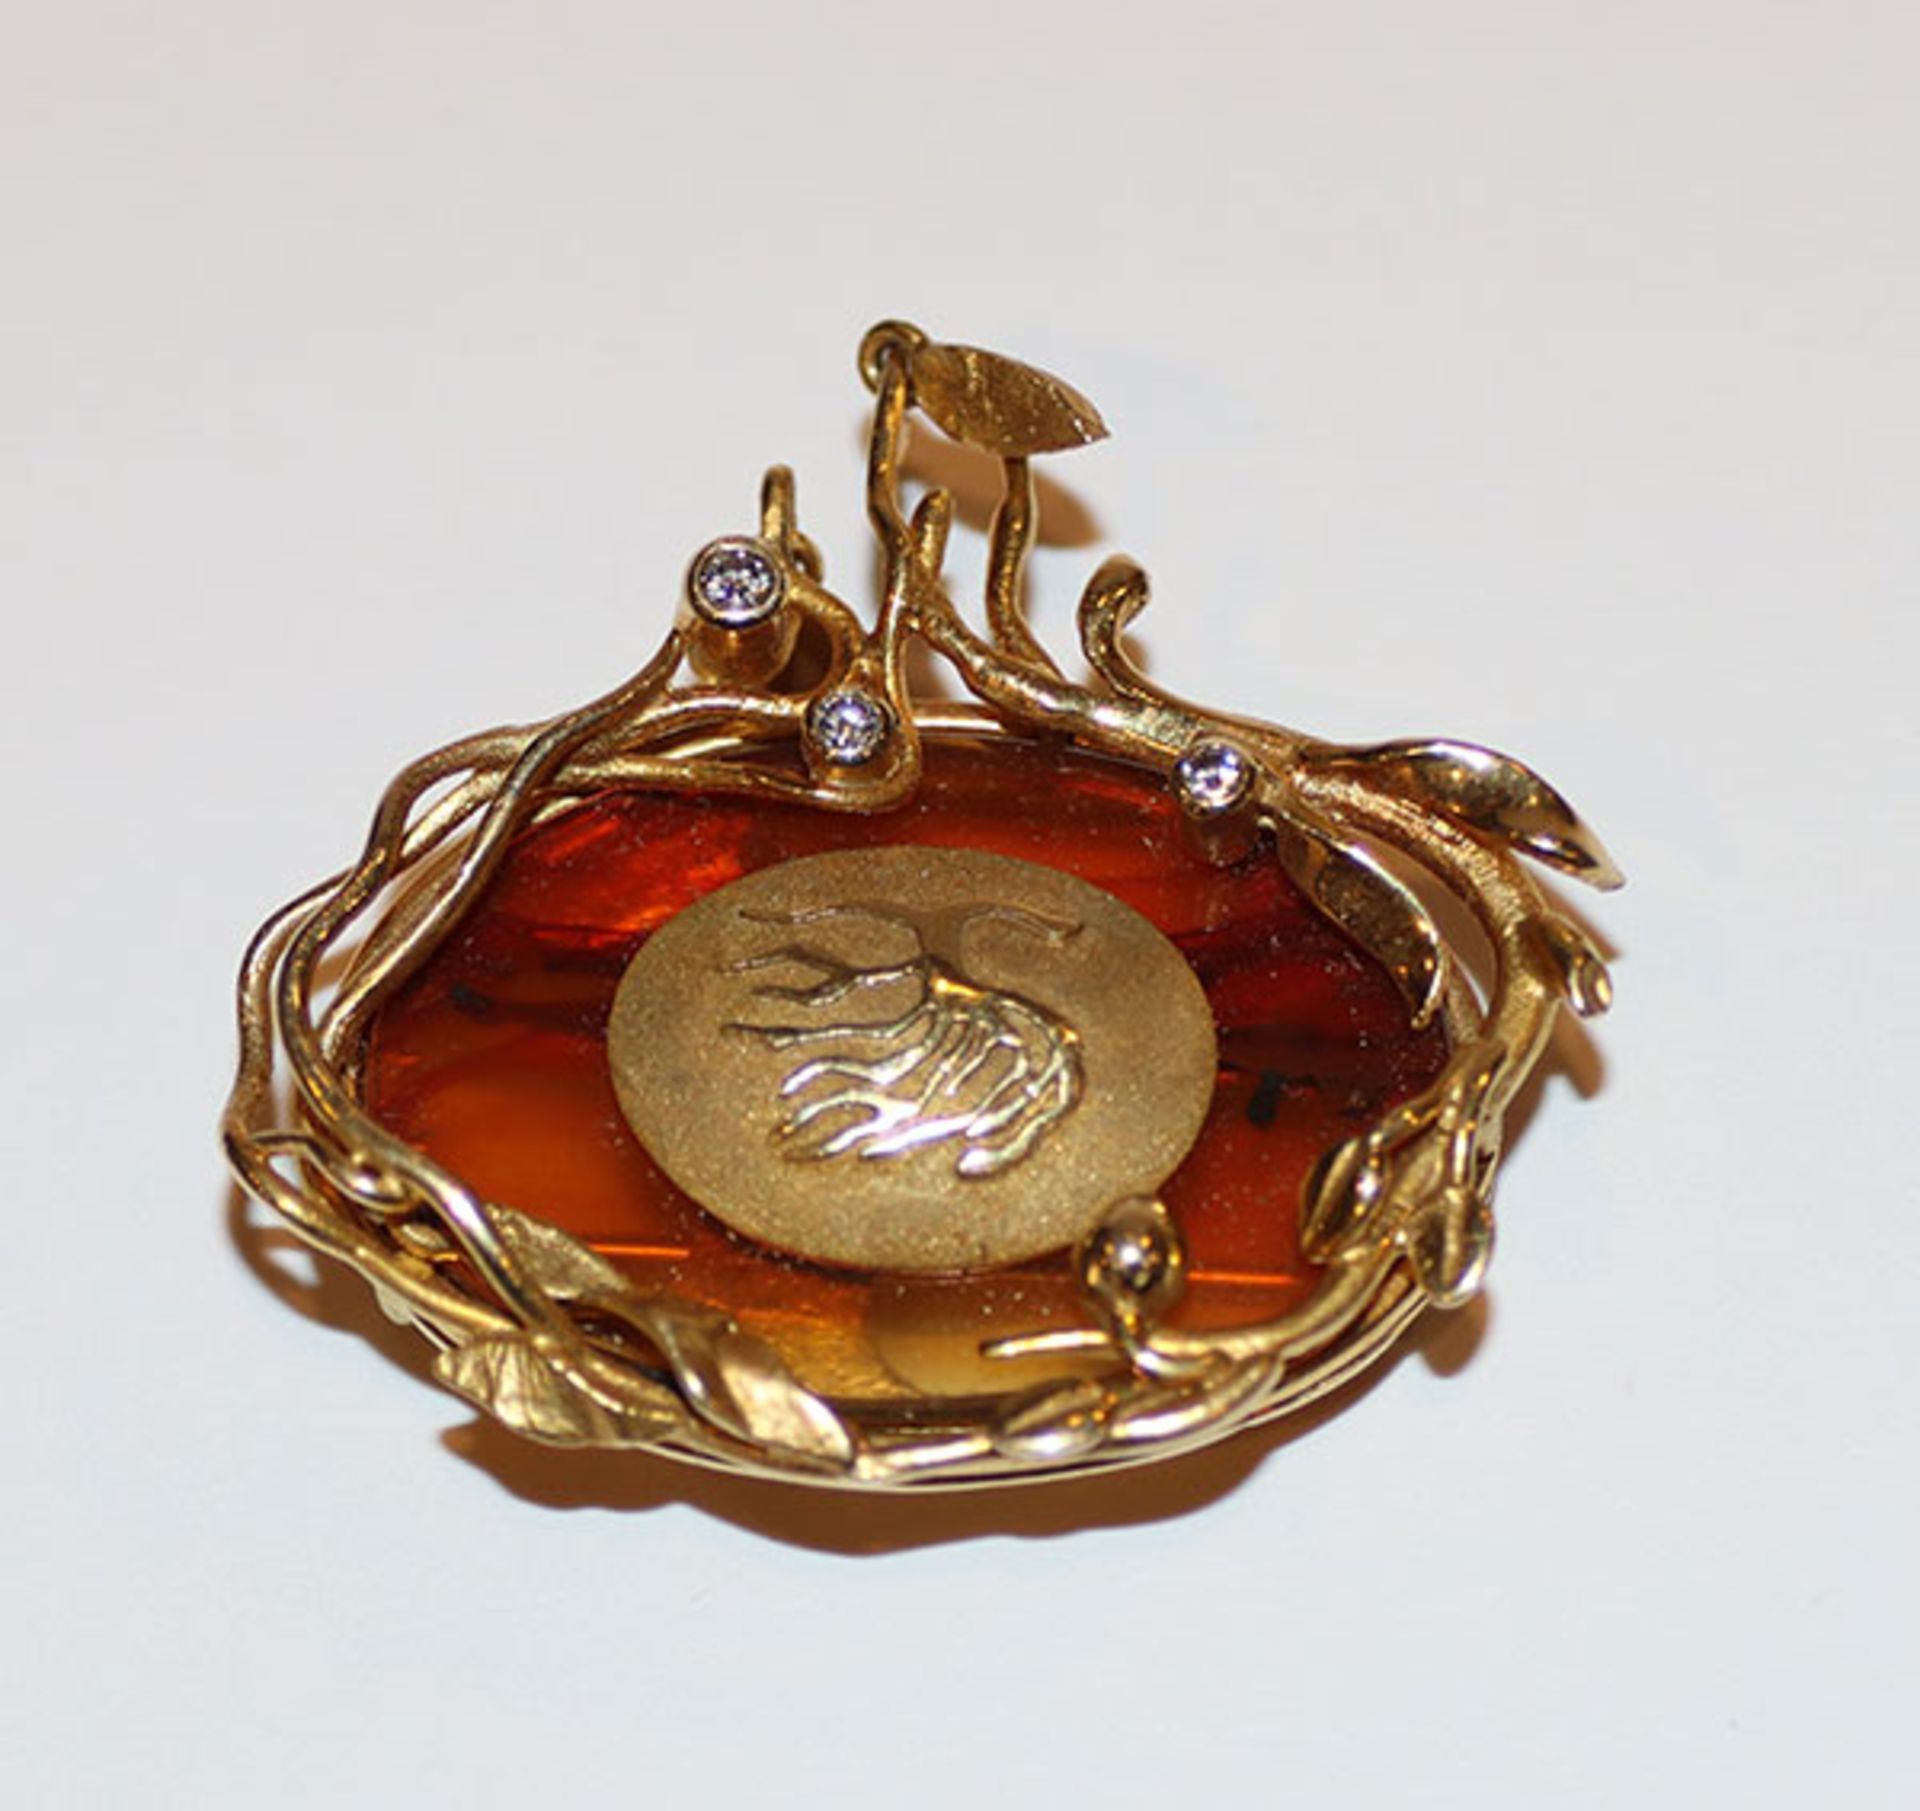 14 k Gelbgold Designer Brosche mit Lebensbaum-Dekor und 3 Diamanten, 12,9 gr., 3,5 cm x 4 cm